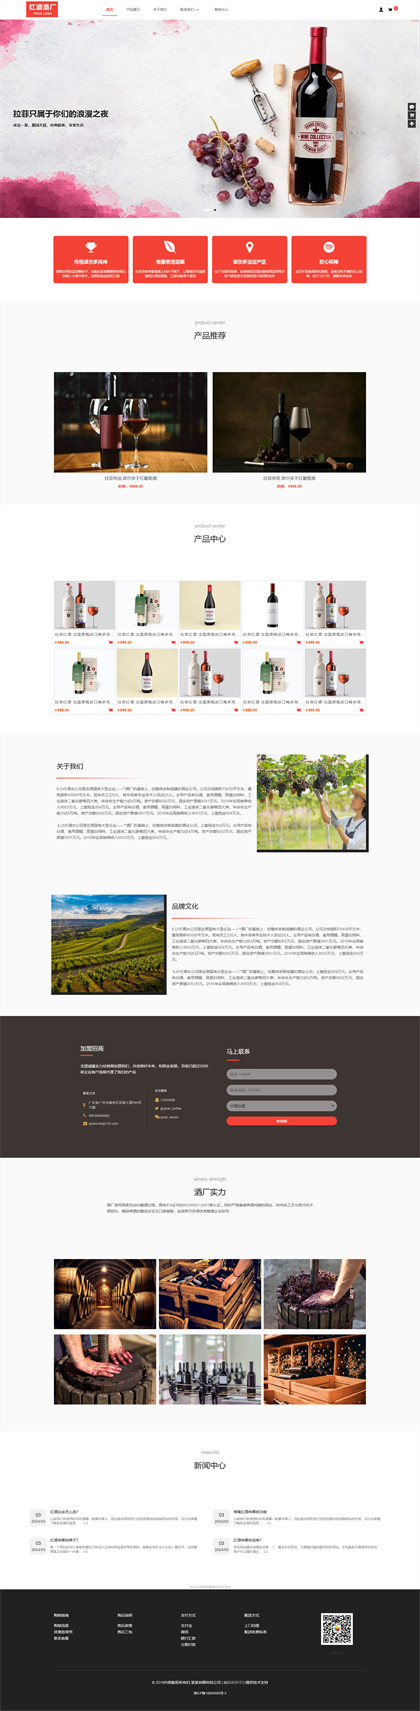 红酒酒水-红酒厂-酒水厂-酒水公司商城网站模板网站模板图片